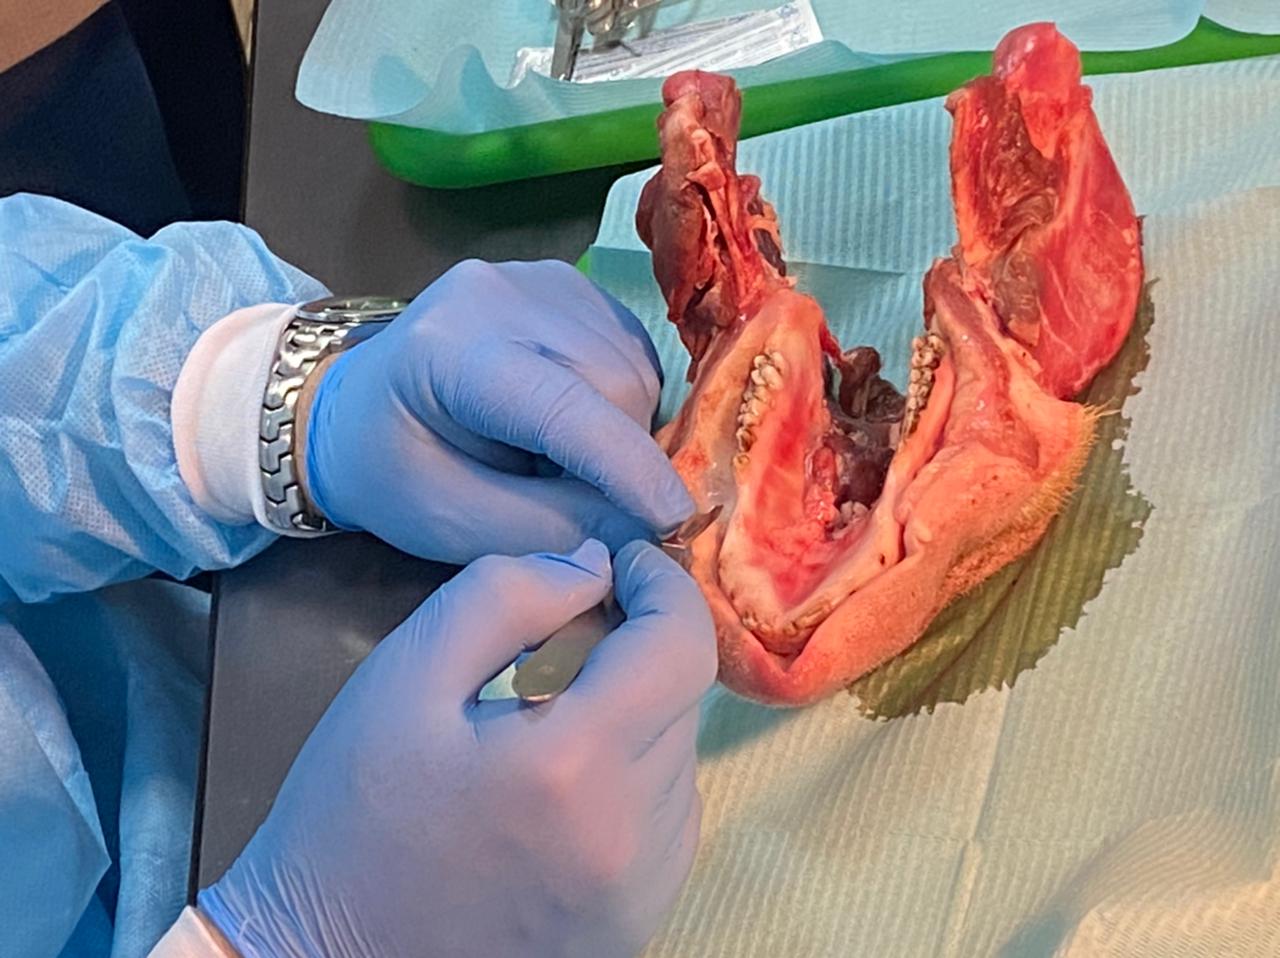 Дентальная имплантация с одновременной пластикой мягких тканей в сложных клинических случаях. 3 апреля 2021